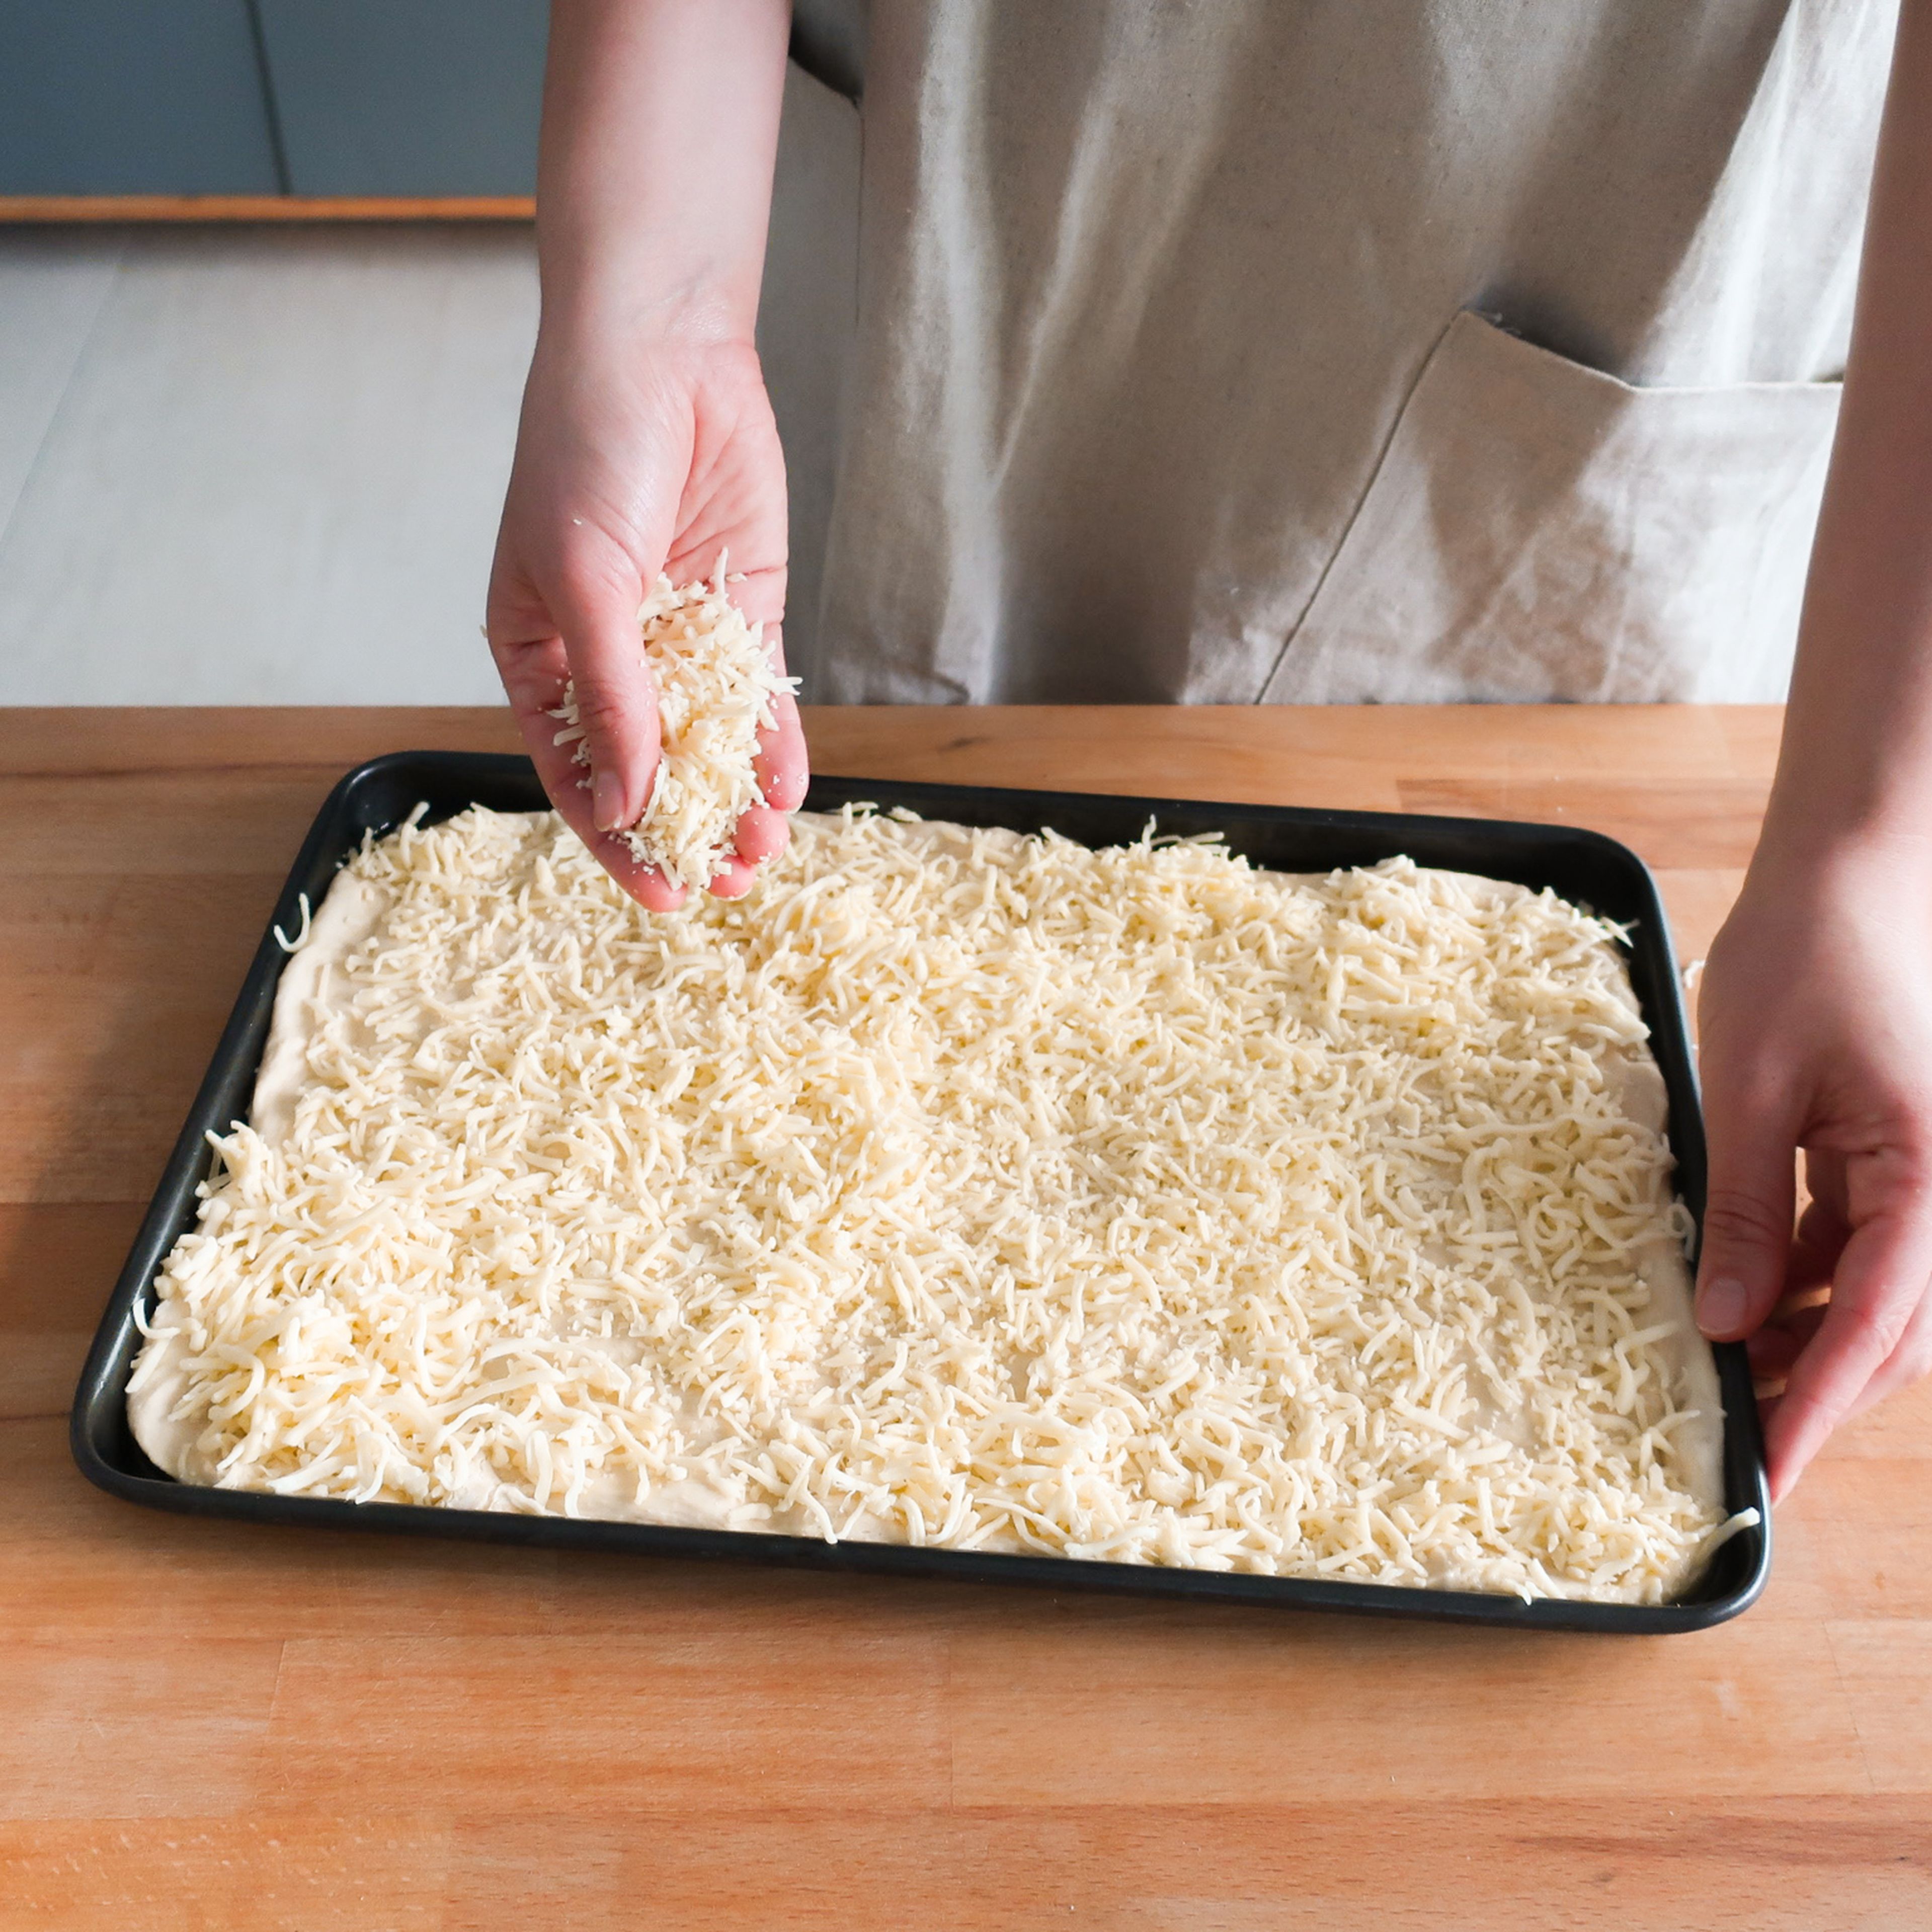 Den Ofen auf 240°C vorheizen oder die Pizza-Einstellung deines Ofens verwenden. Ein Backblech großzügig einölen. Jetzt den Pizzateig auf das Backblech geben und vorsichtig in alle Ecken drücken, bis das Blech komplett ausgefüllt ist. Eine großzügige Schicht geriebenen Mozzarellakäse über die gesamte Teigfläche streuen.